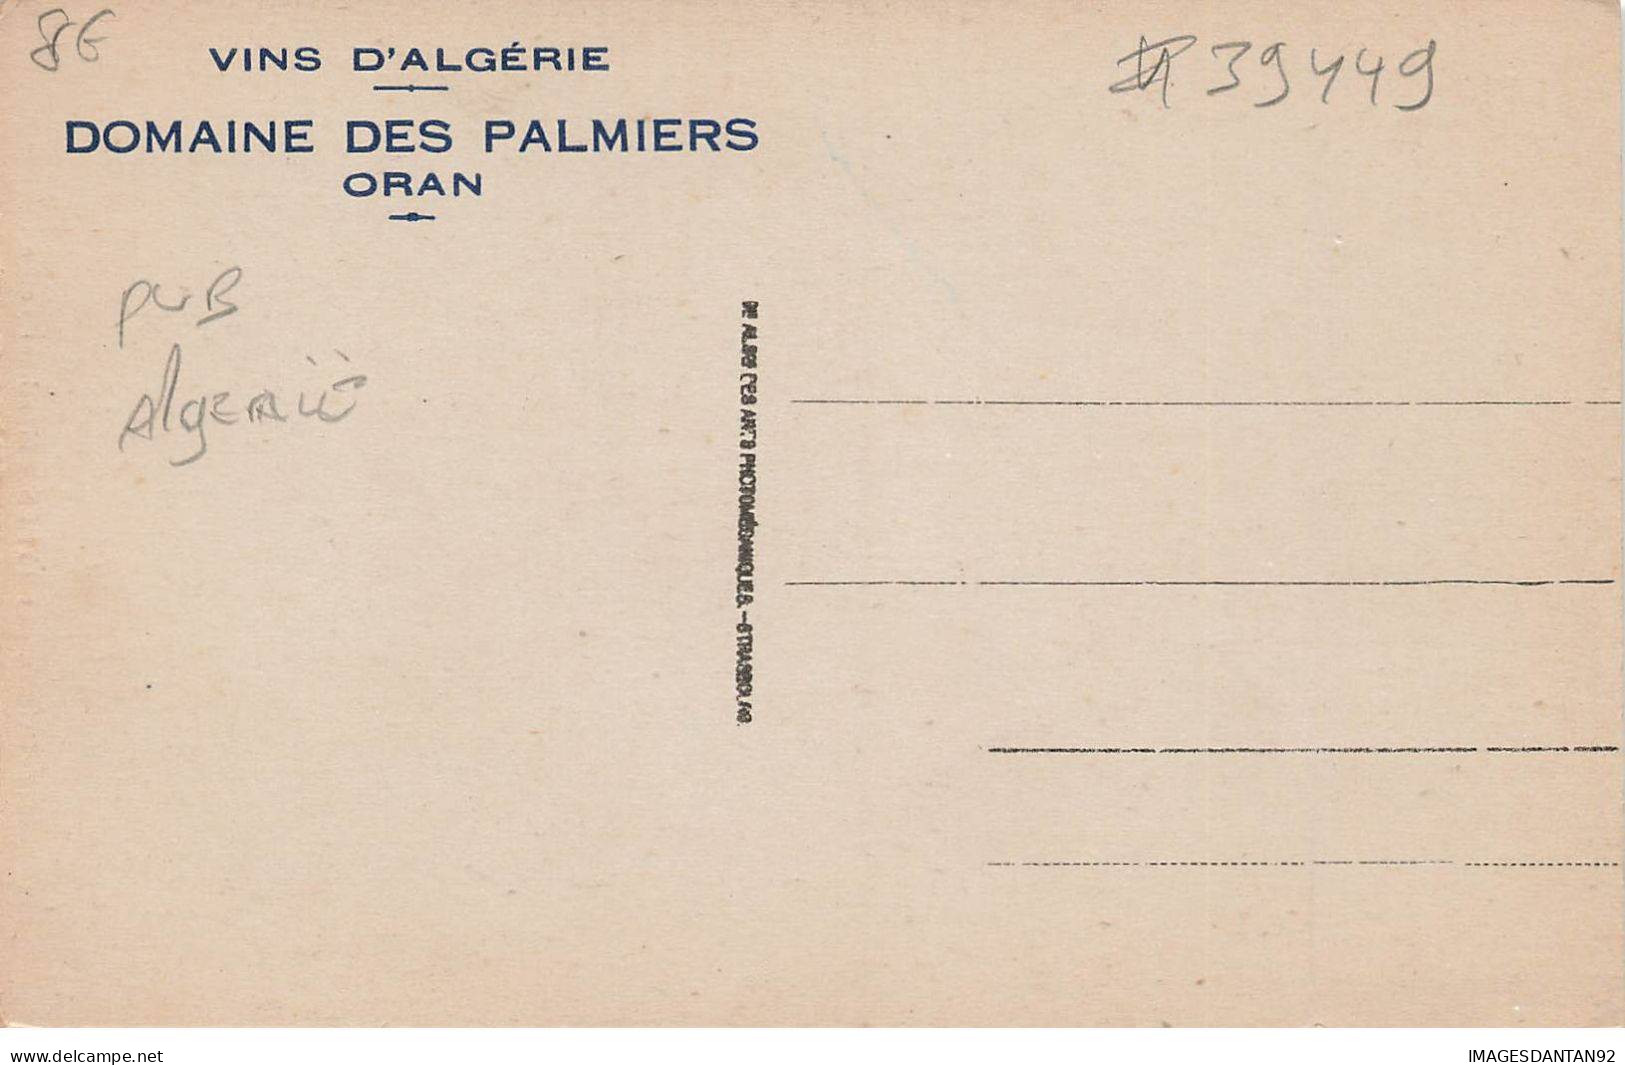 ALGERIE MK39449 MENDIANT ARABE VINS D ALGERIE DOMAINE DES PALMIERS ORAN PUBLICITE - Escenas & Tipos